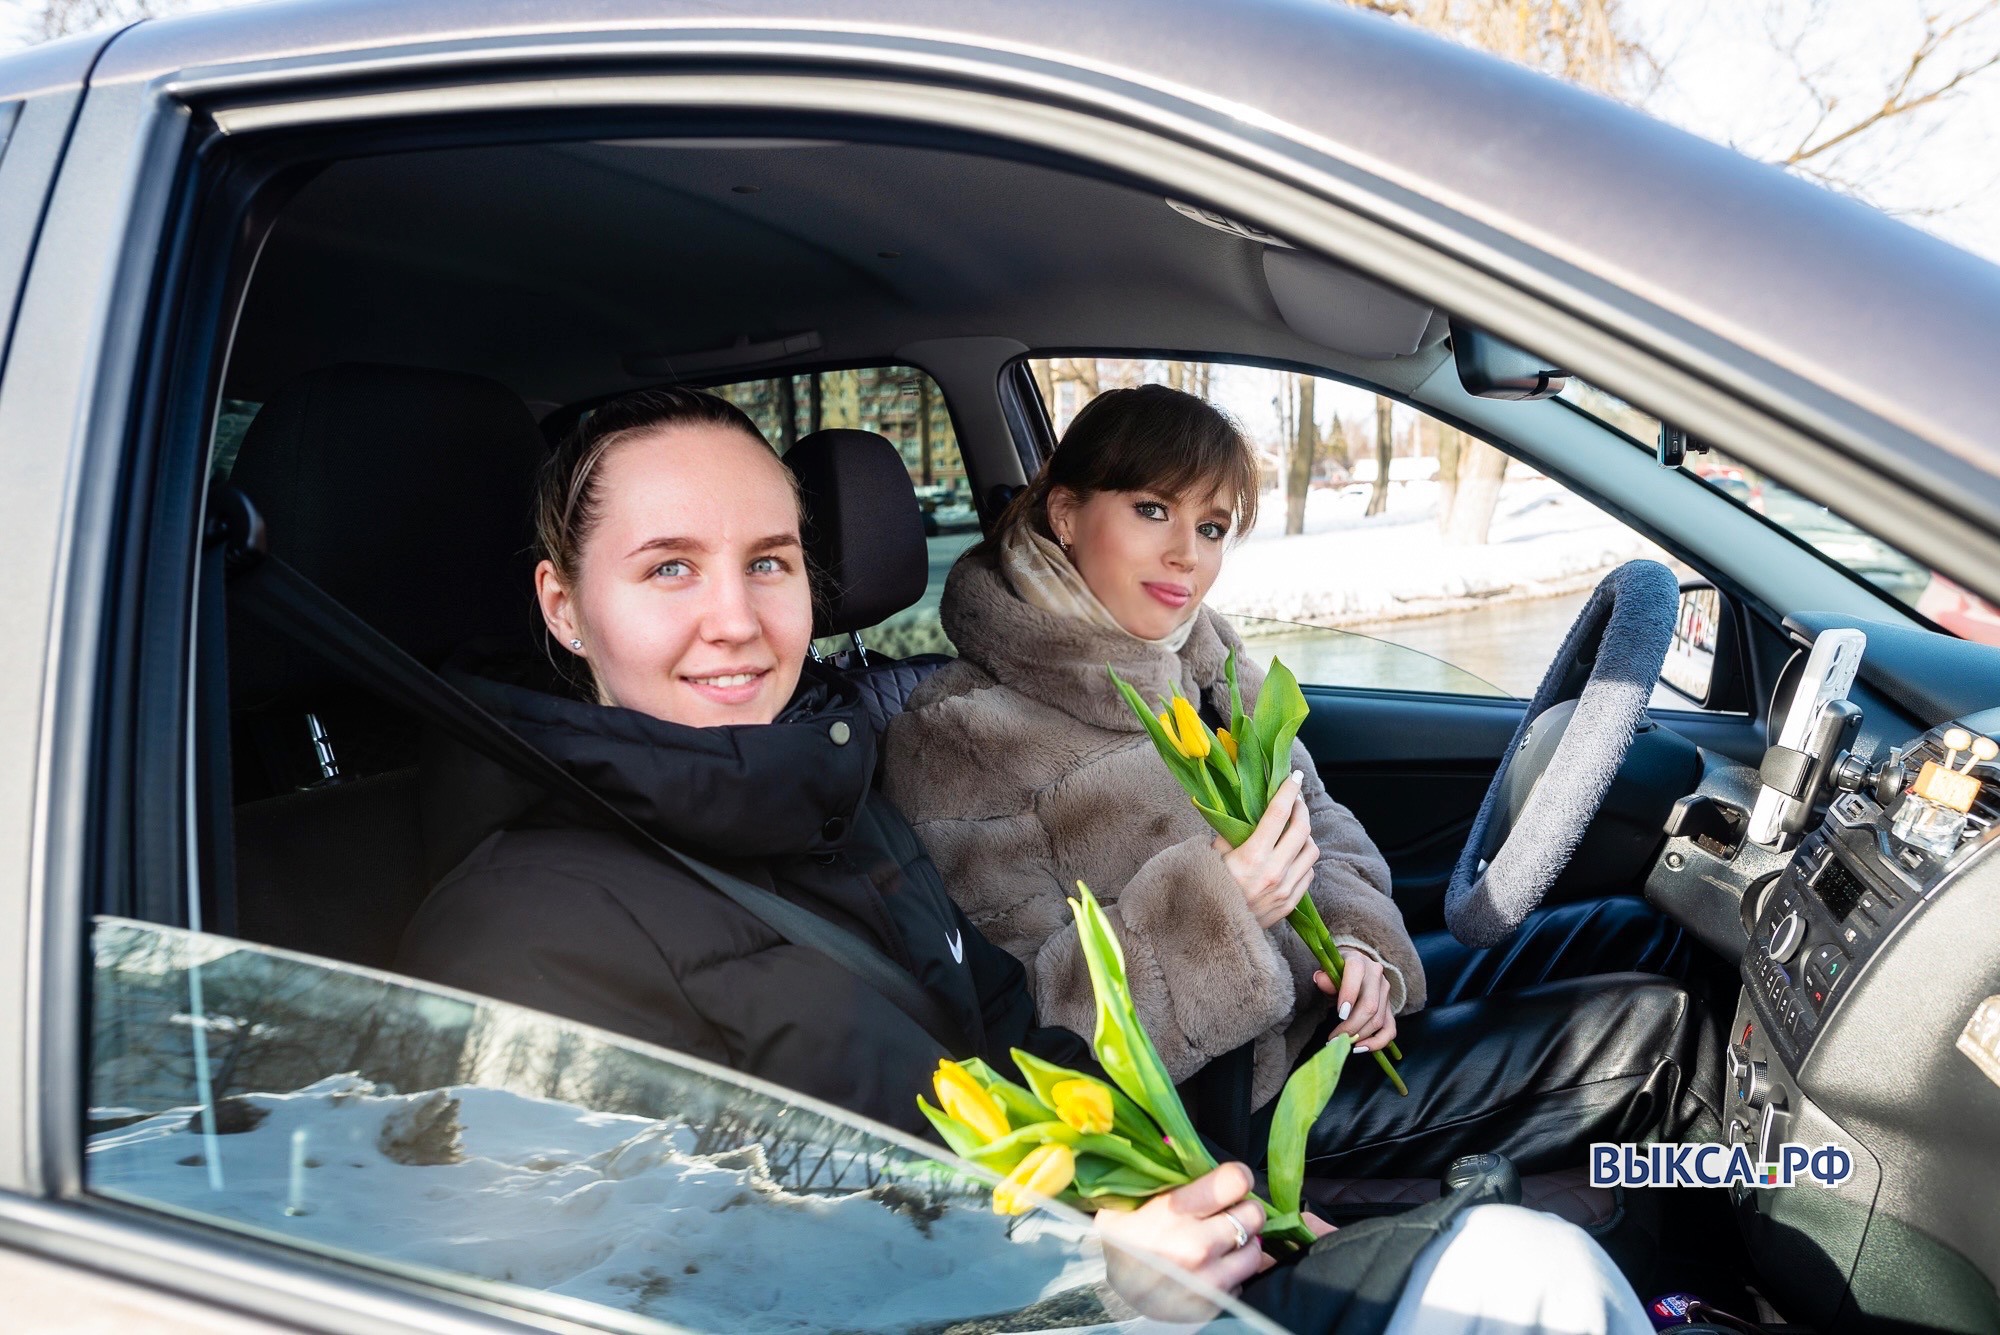 Остановитесь, вам цветы! Женщин-водителей и пассажиров поздравили с 8 Марта 📷